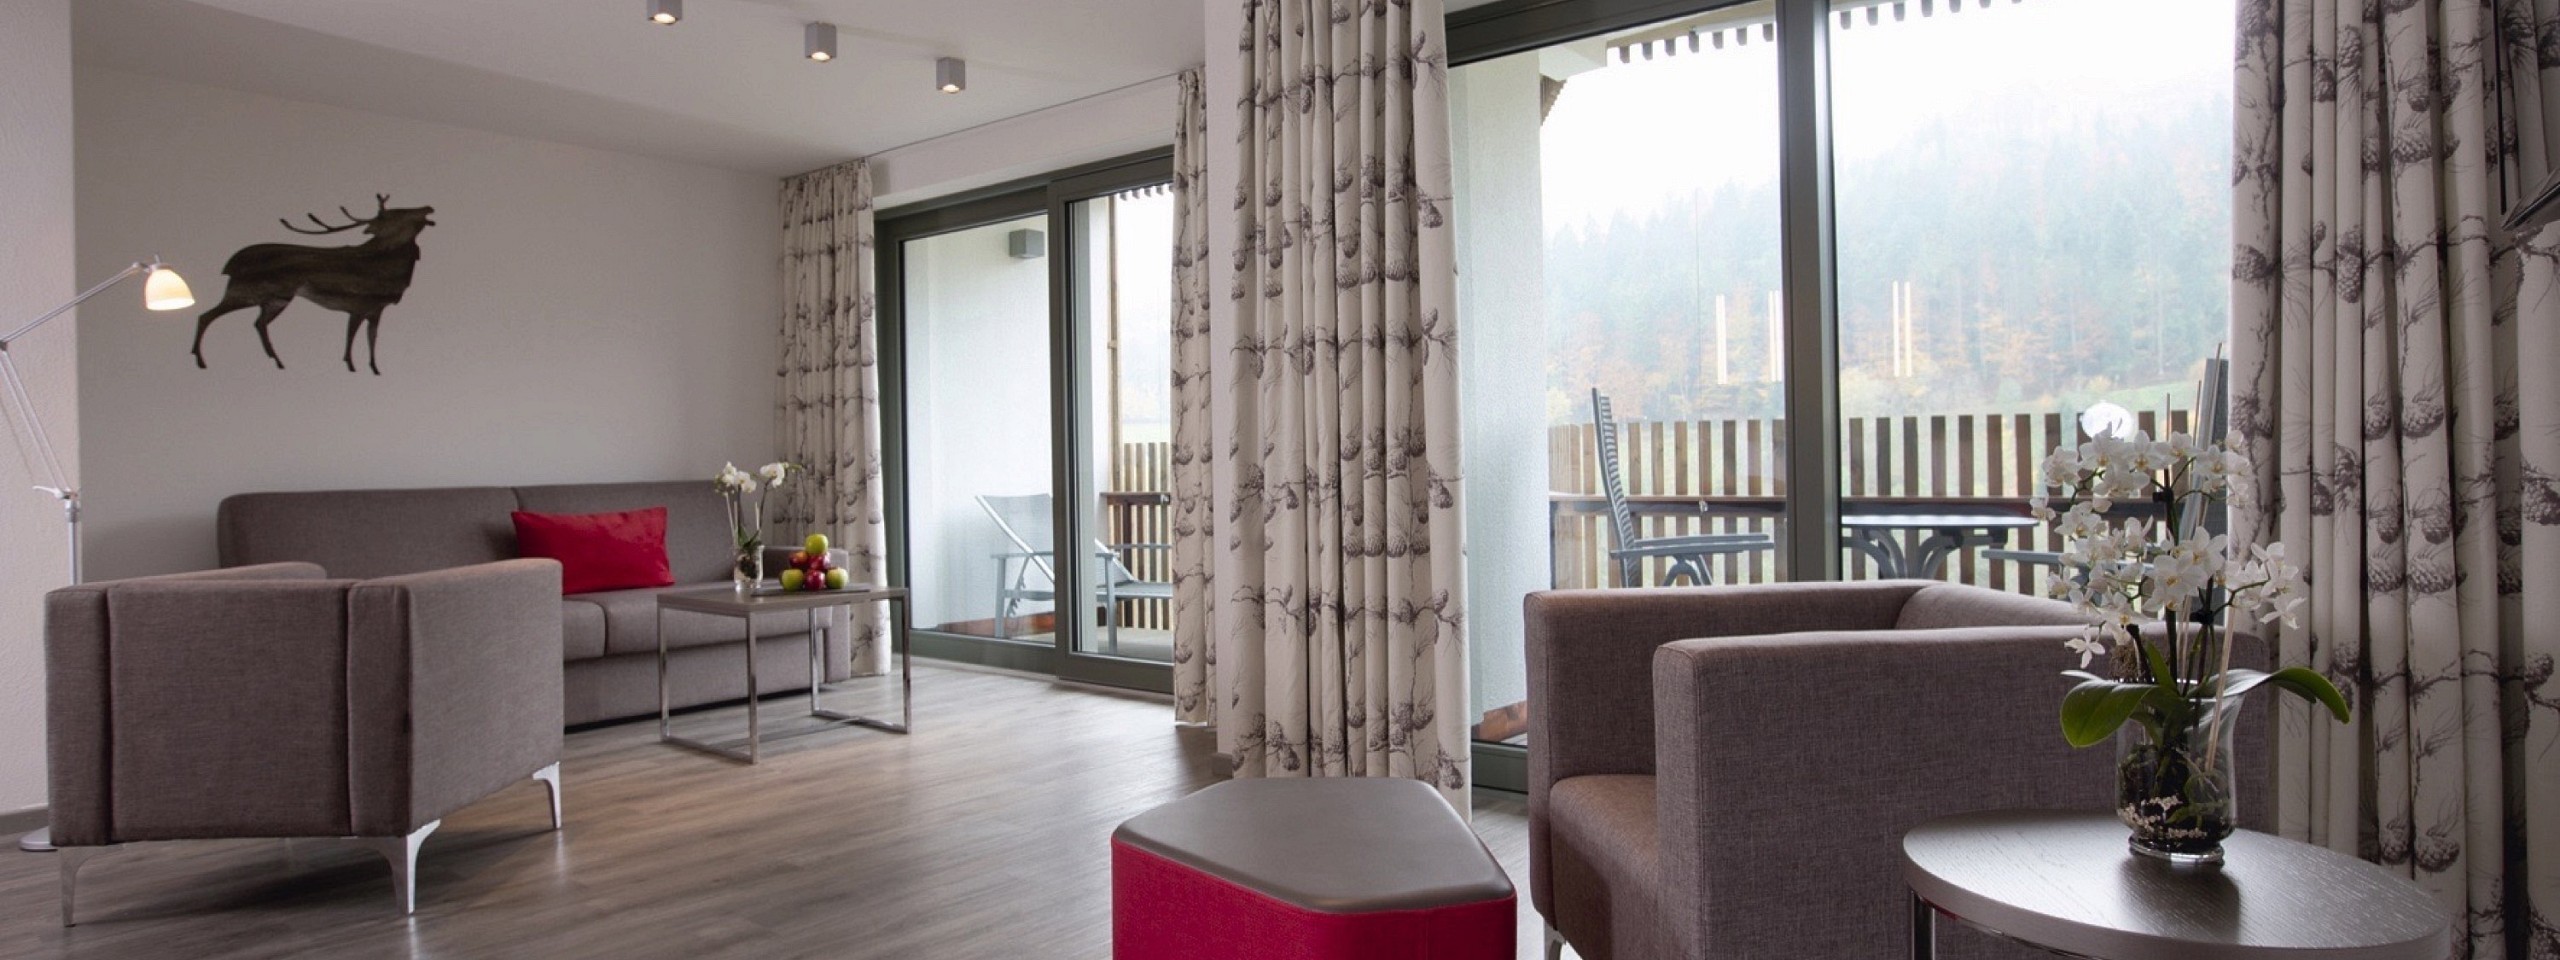 Geräumiges Zimmer mit Sitzmöglichkeiten und Balkon im Hotel mit Arrangements im Schwarzwald.